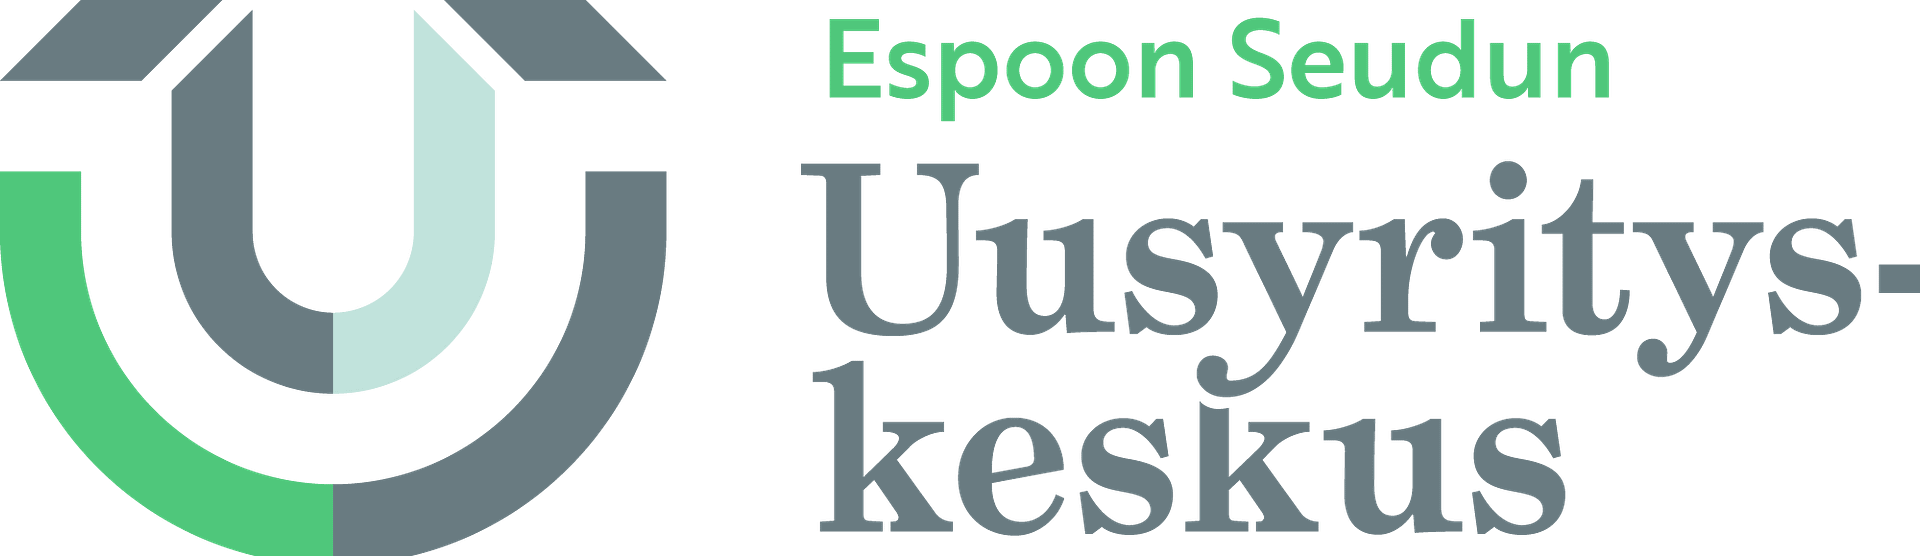 Espoon Seudun Uusyrityskeskus logo